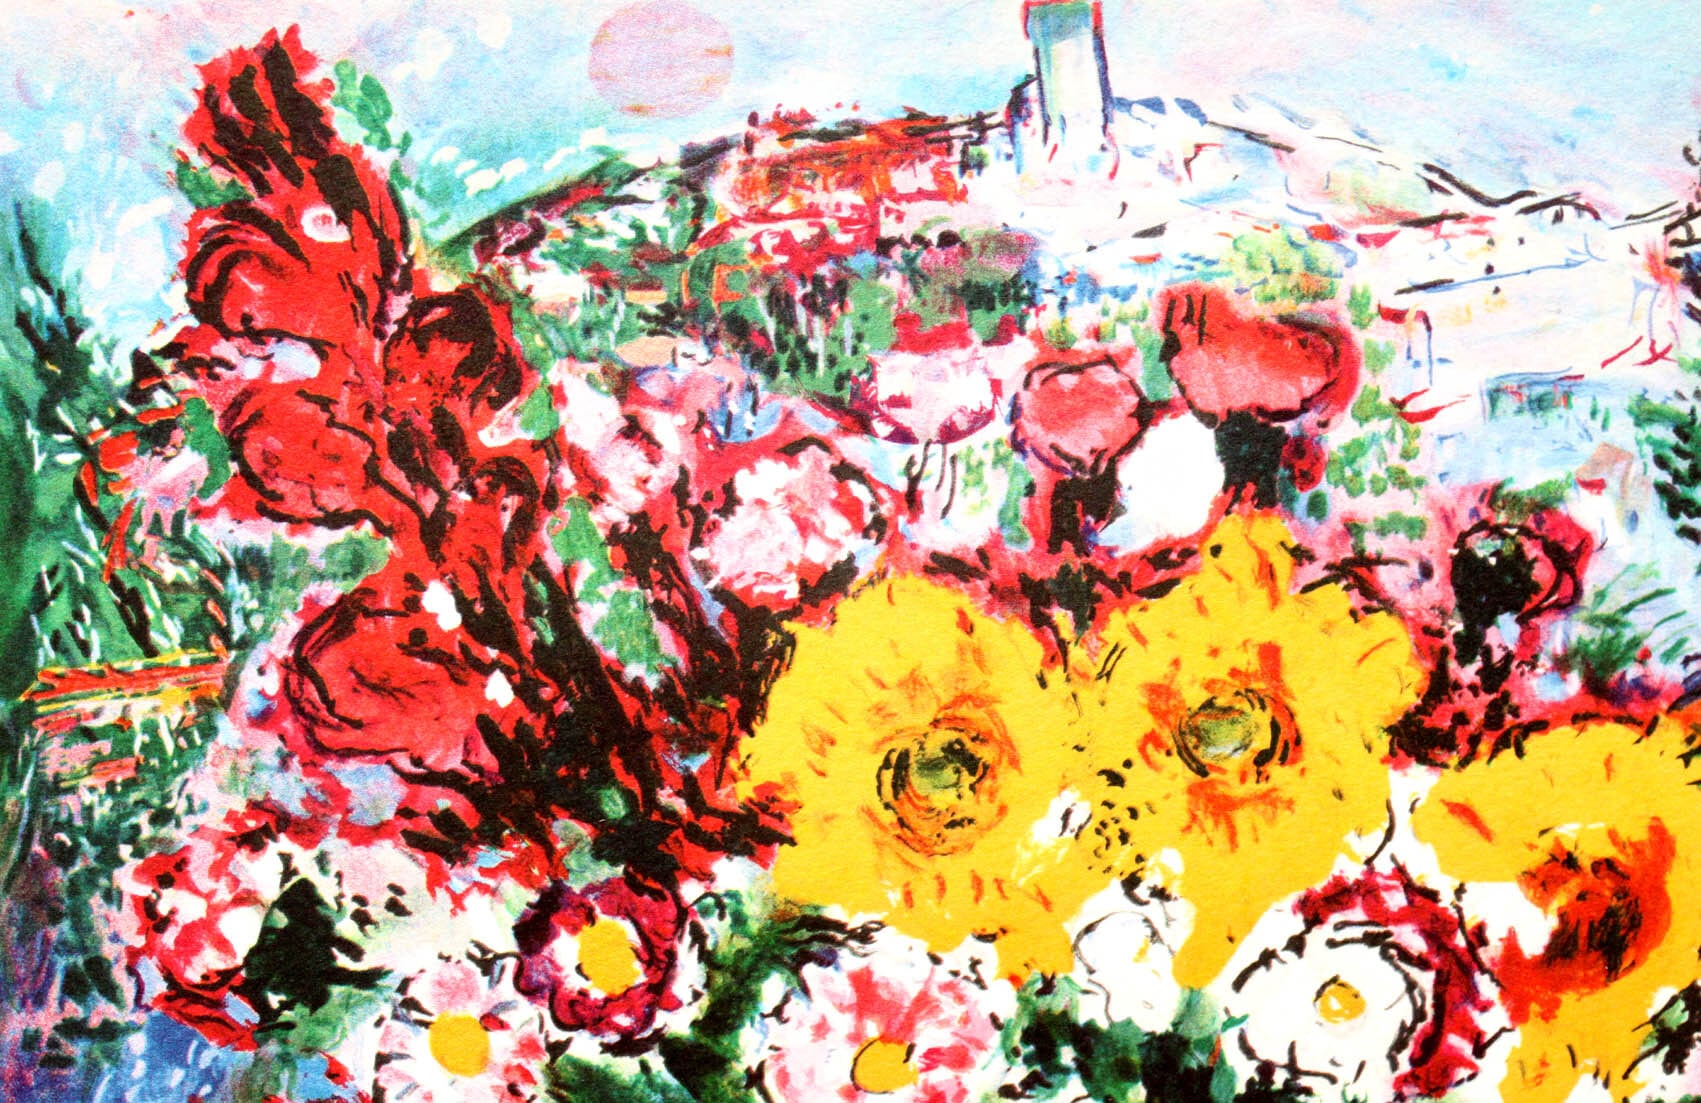 マルク・シャガール絵画「憂い」作品証明書・展示用フック・限定375部エディション付複製画ジークレ